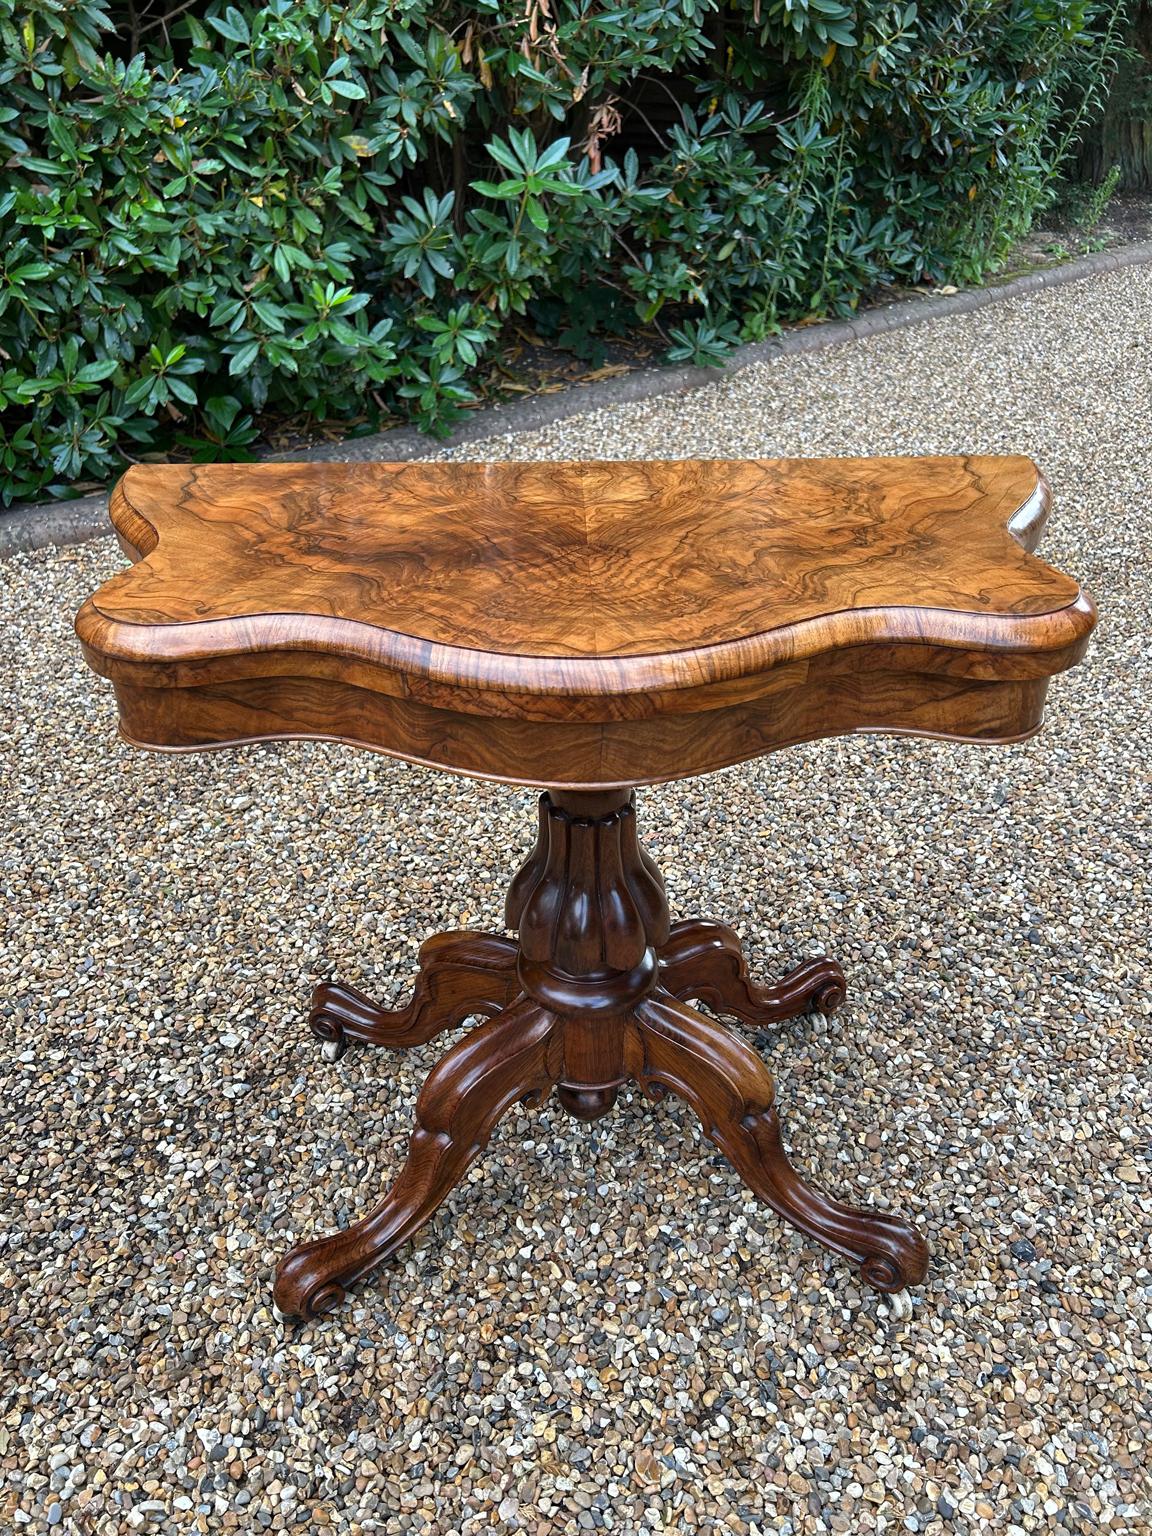 Eine sehr hohe Qualität 19. Jahrhundert viktorianischen Burr Walnuss Serpentine Kartentisch von außergewöhnlicher Qualität und Zustand. Mit gedrechselten und geschnitzten Säulenstützen, vier gut geschnitzten und geformten Cabriole-Beinen mit